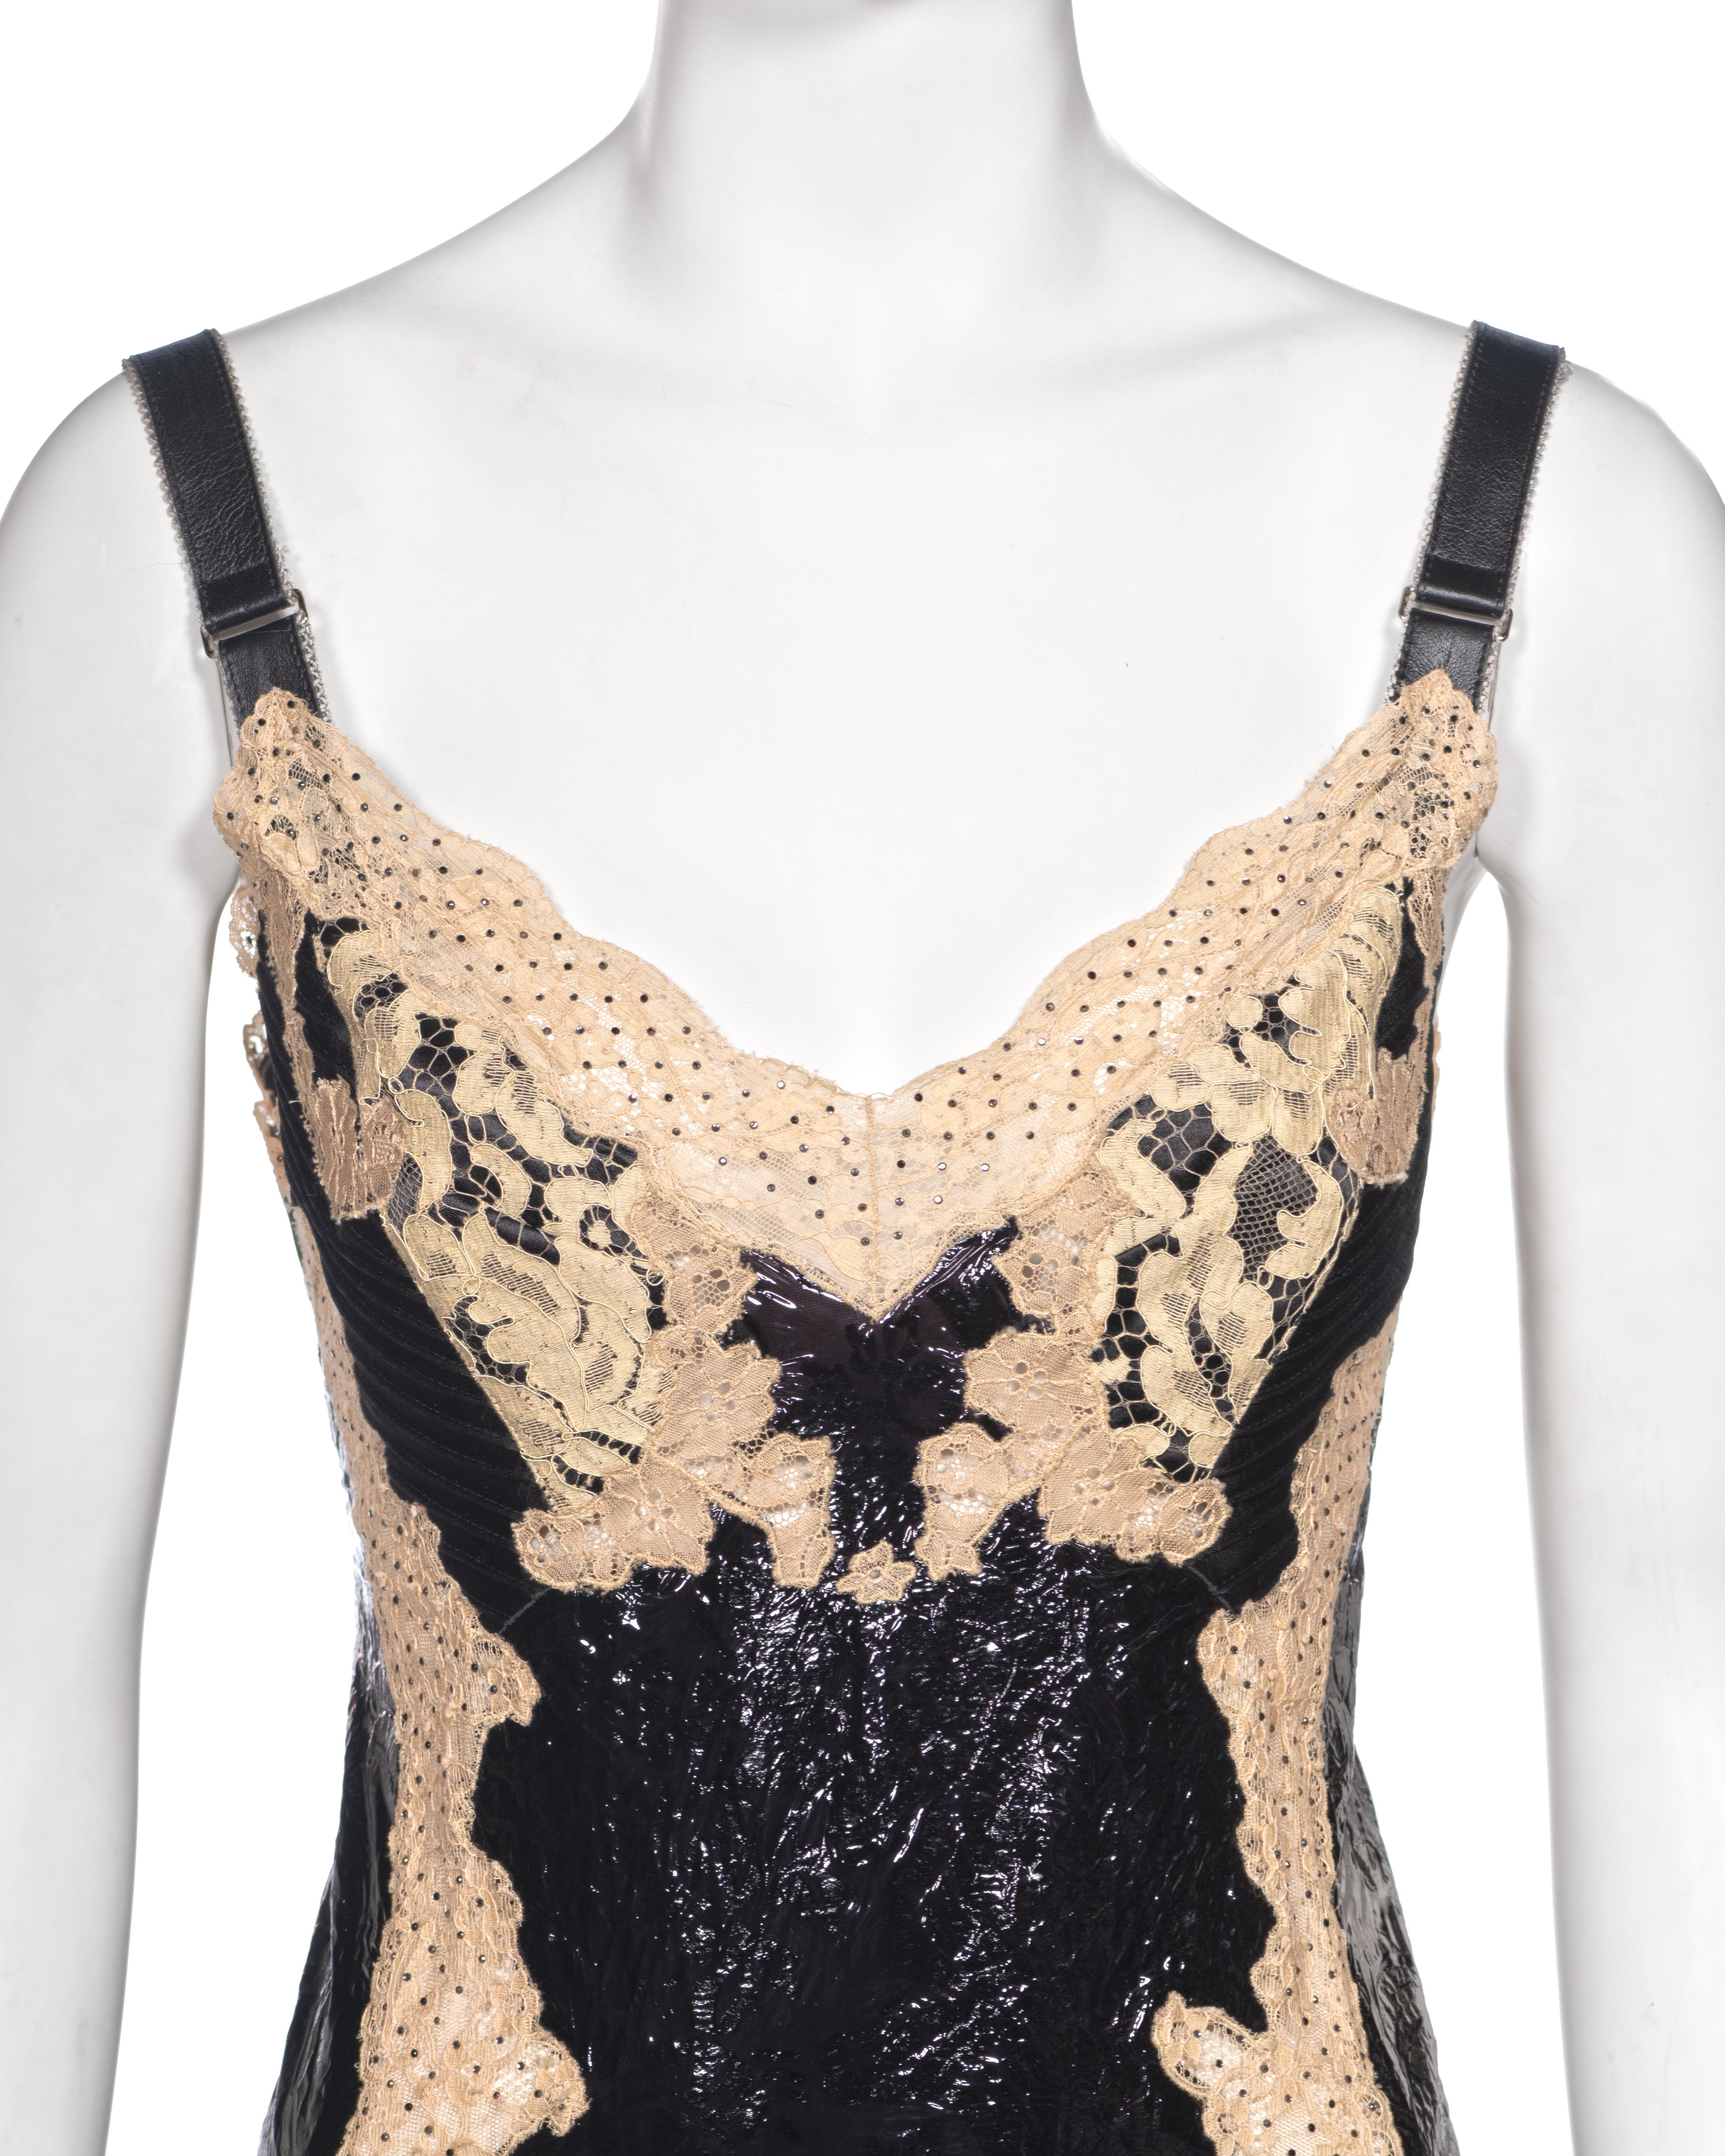 Louis Vuitton by Nicolas Ghesquière Evening Slip Dress Dress with Lace, fw 2017 For Sale 1